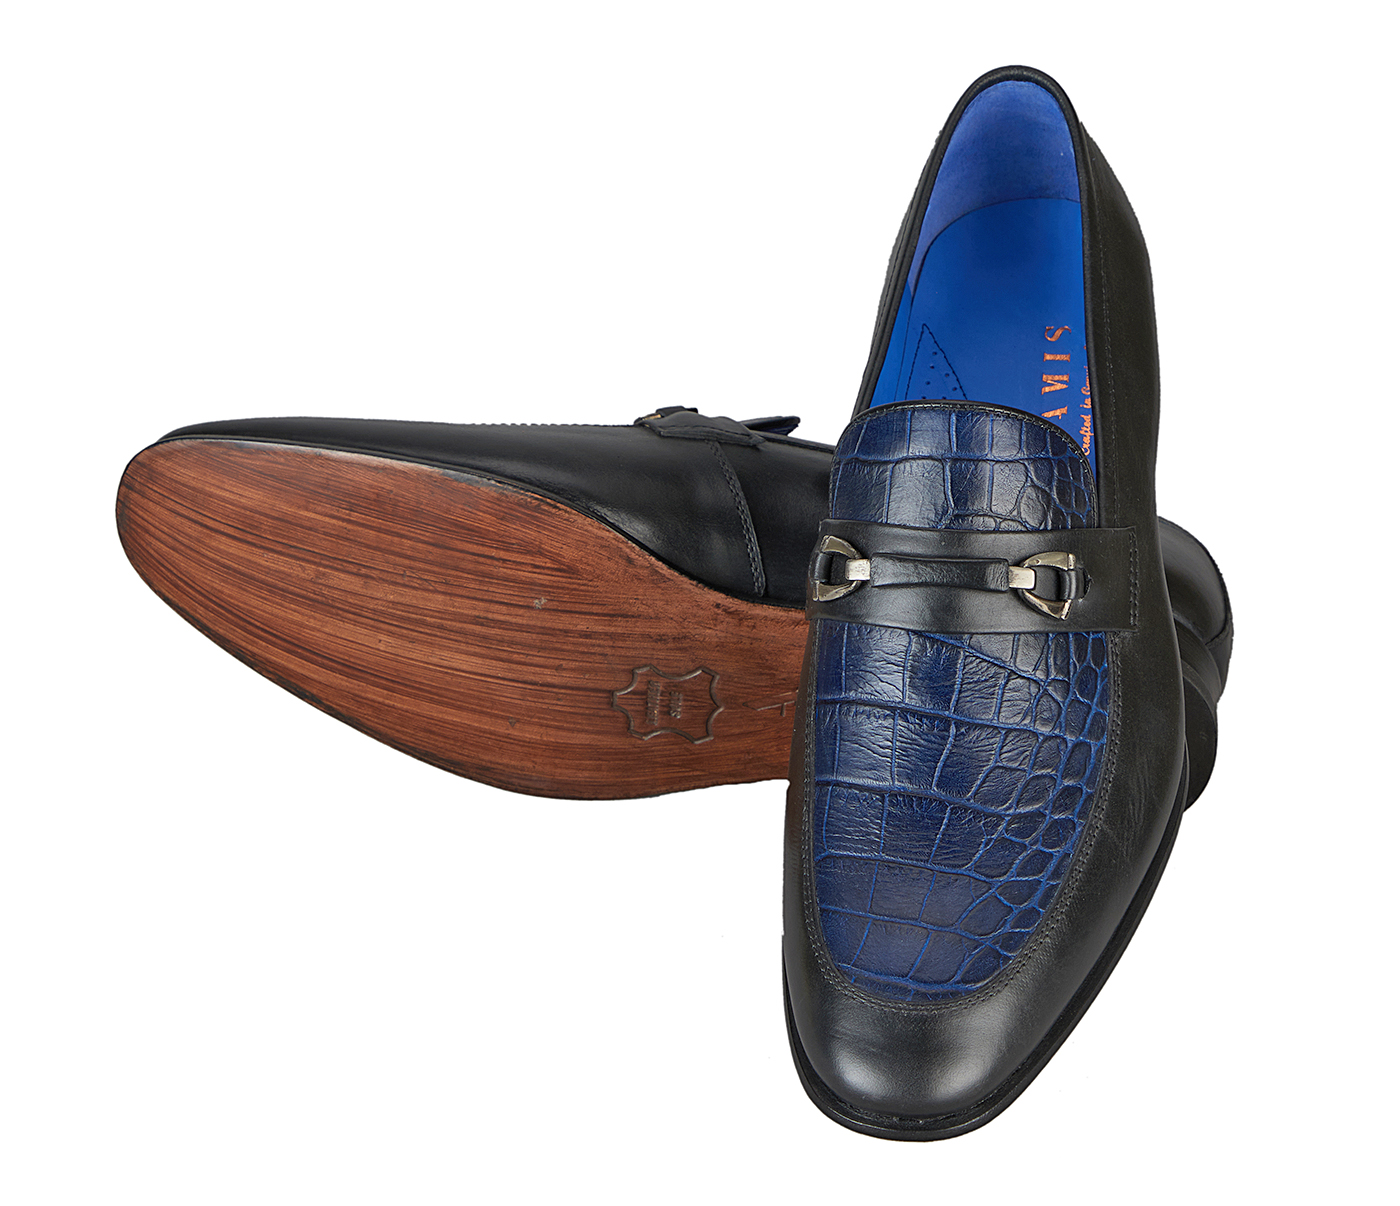 Footwear-Adamis Pure Leather Footwear For Men- - Black/Blue